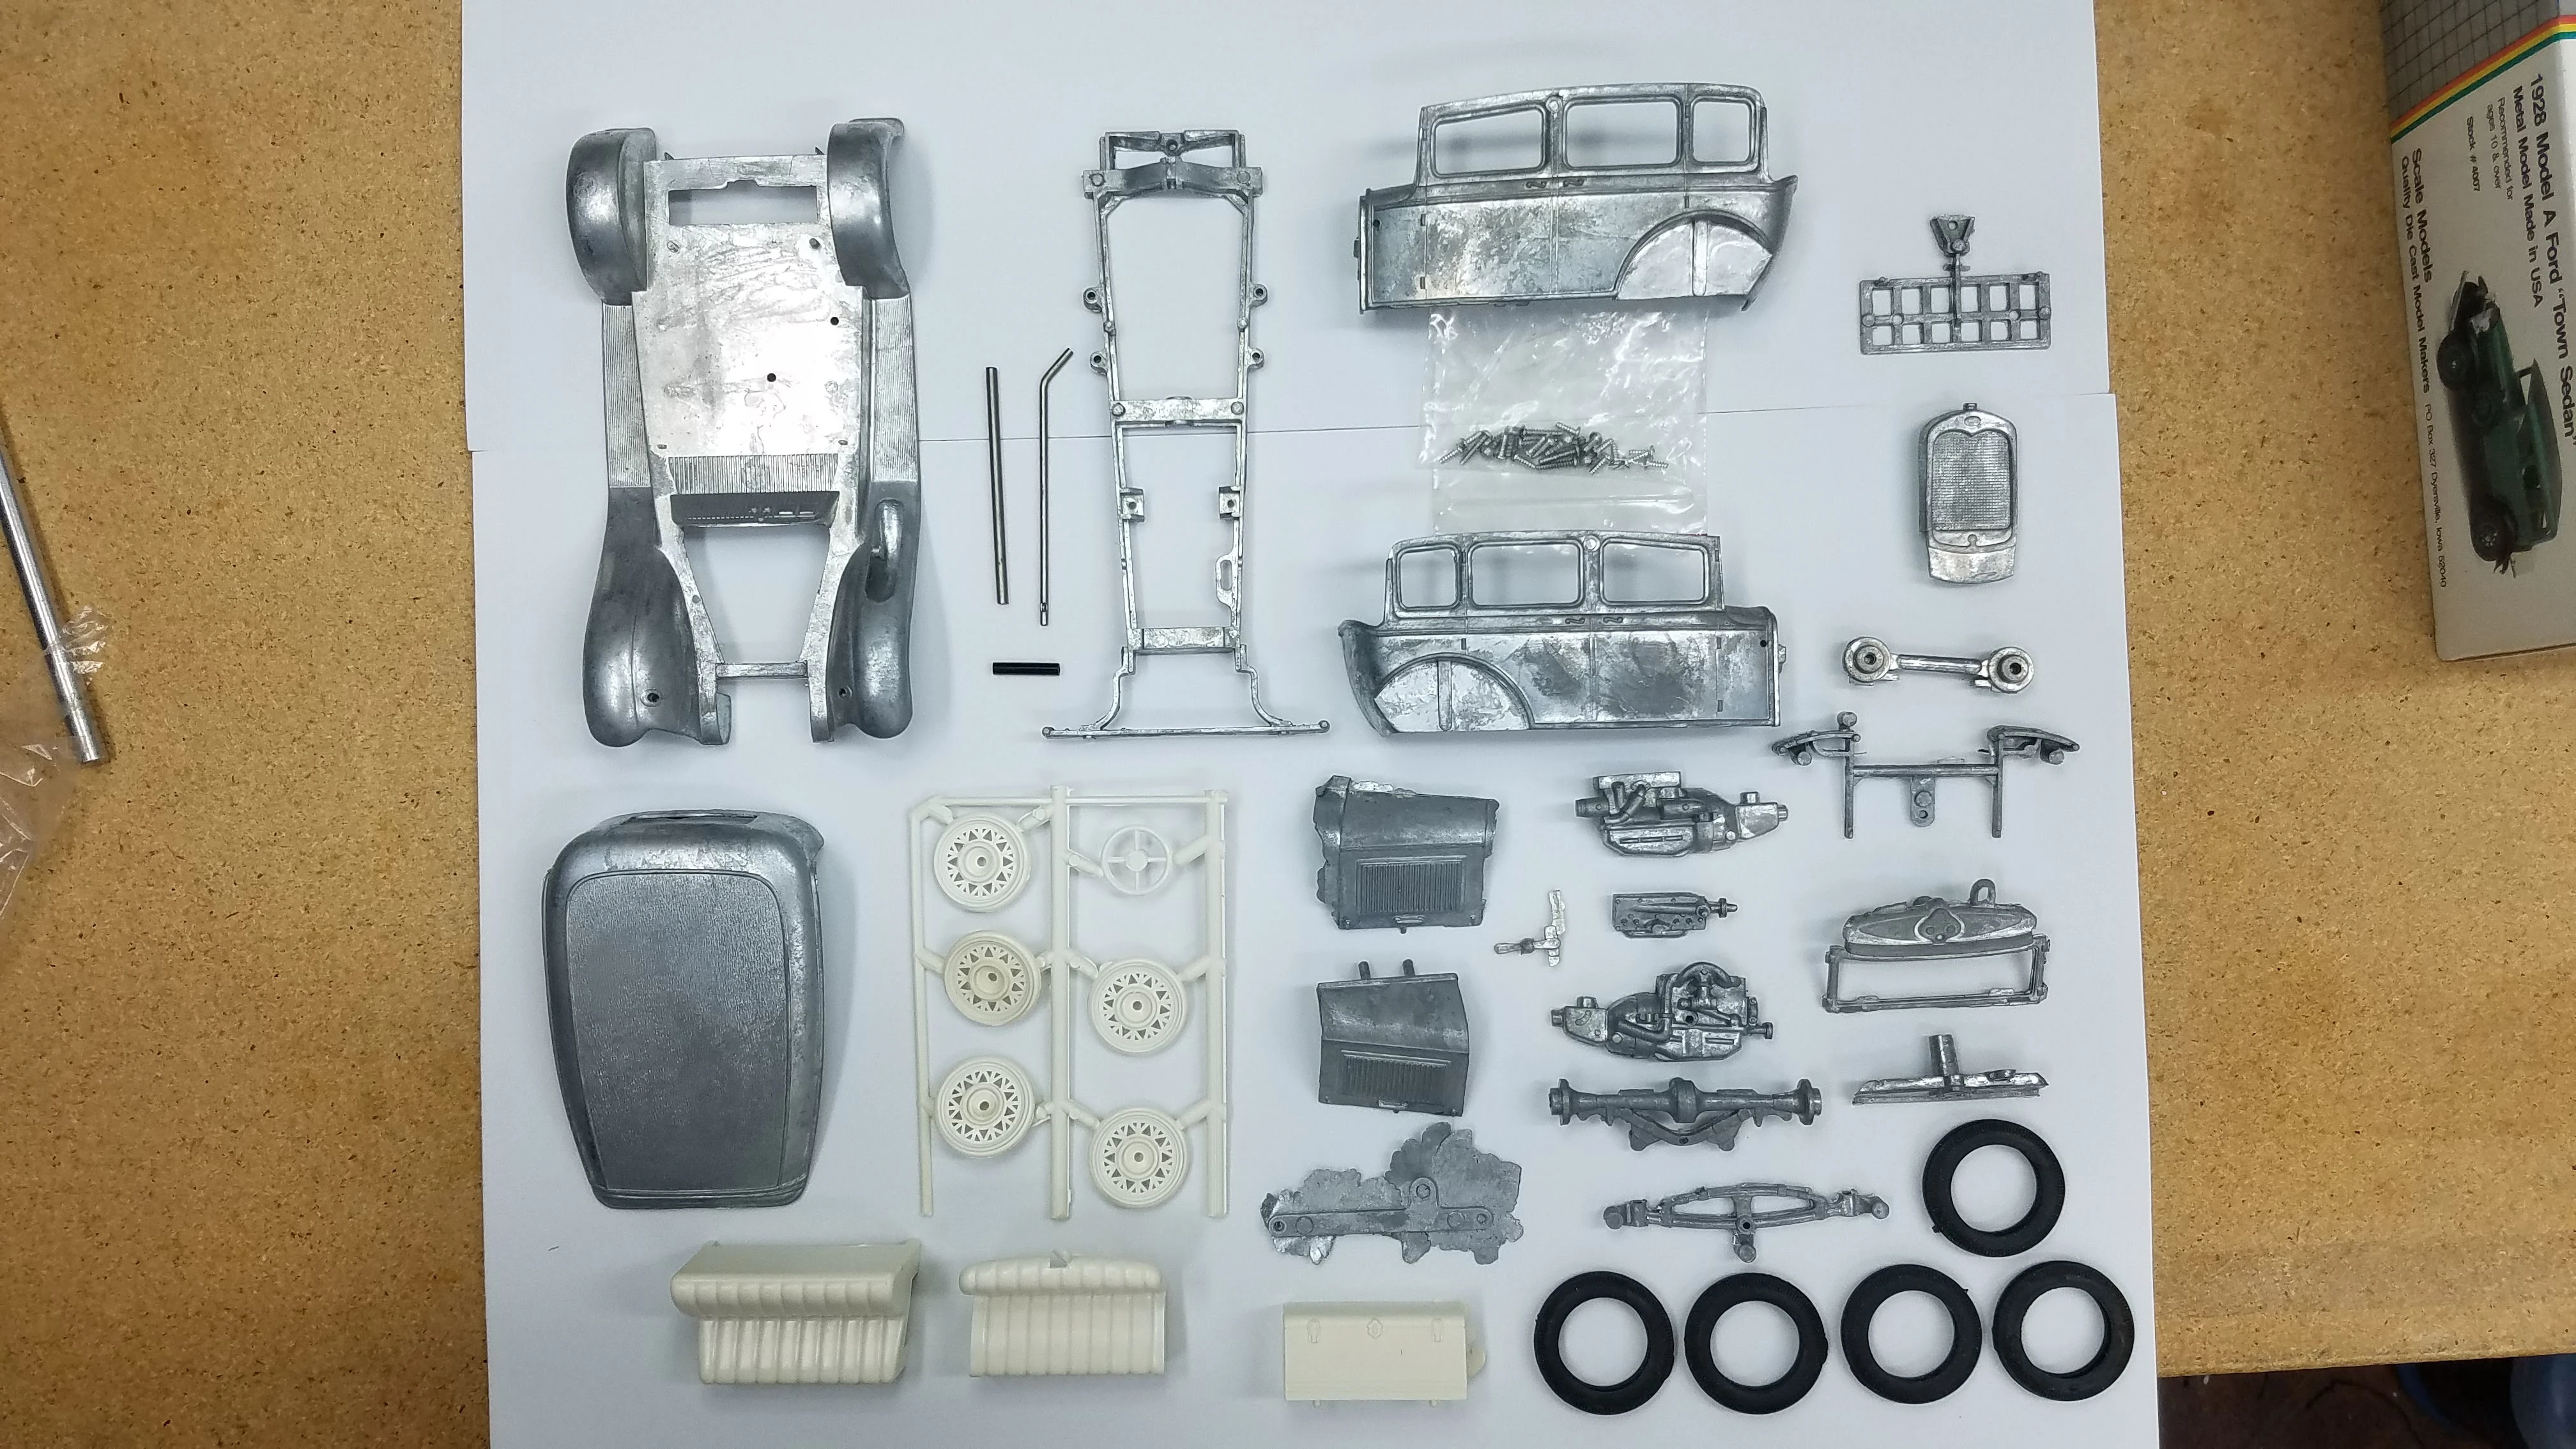 Kit parts laid out